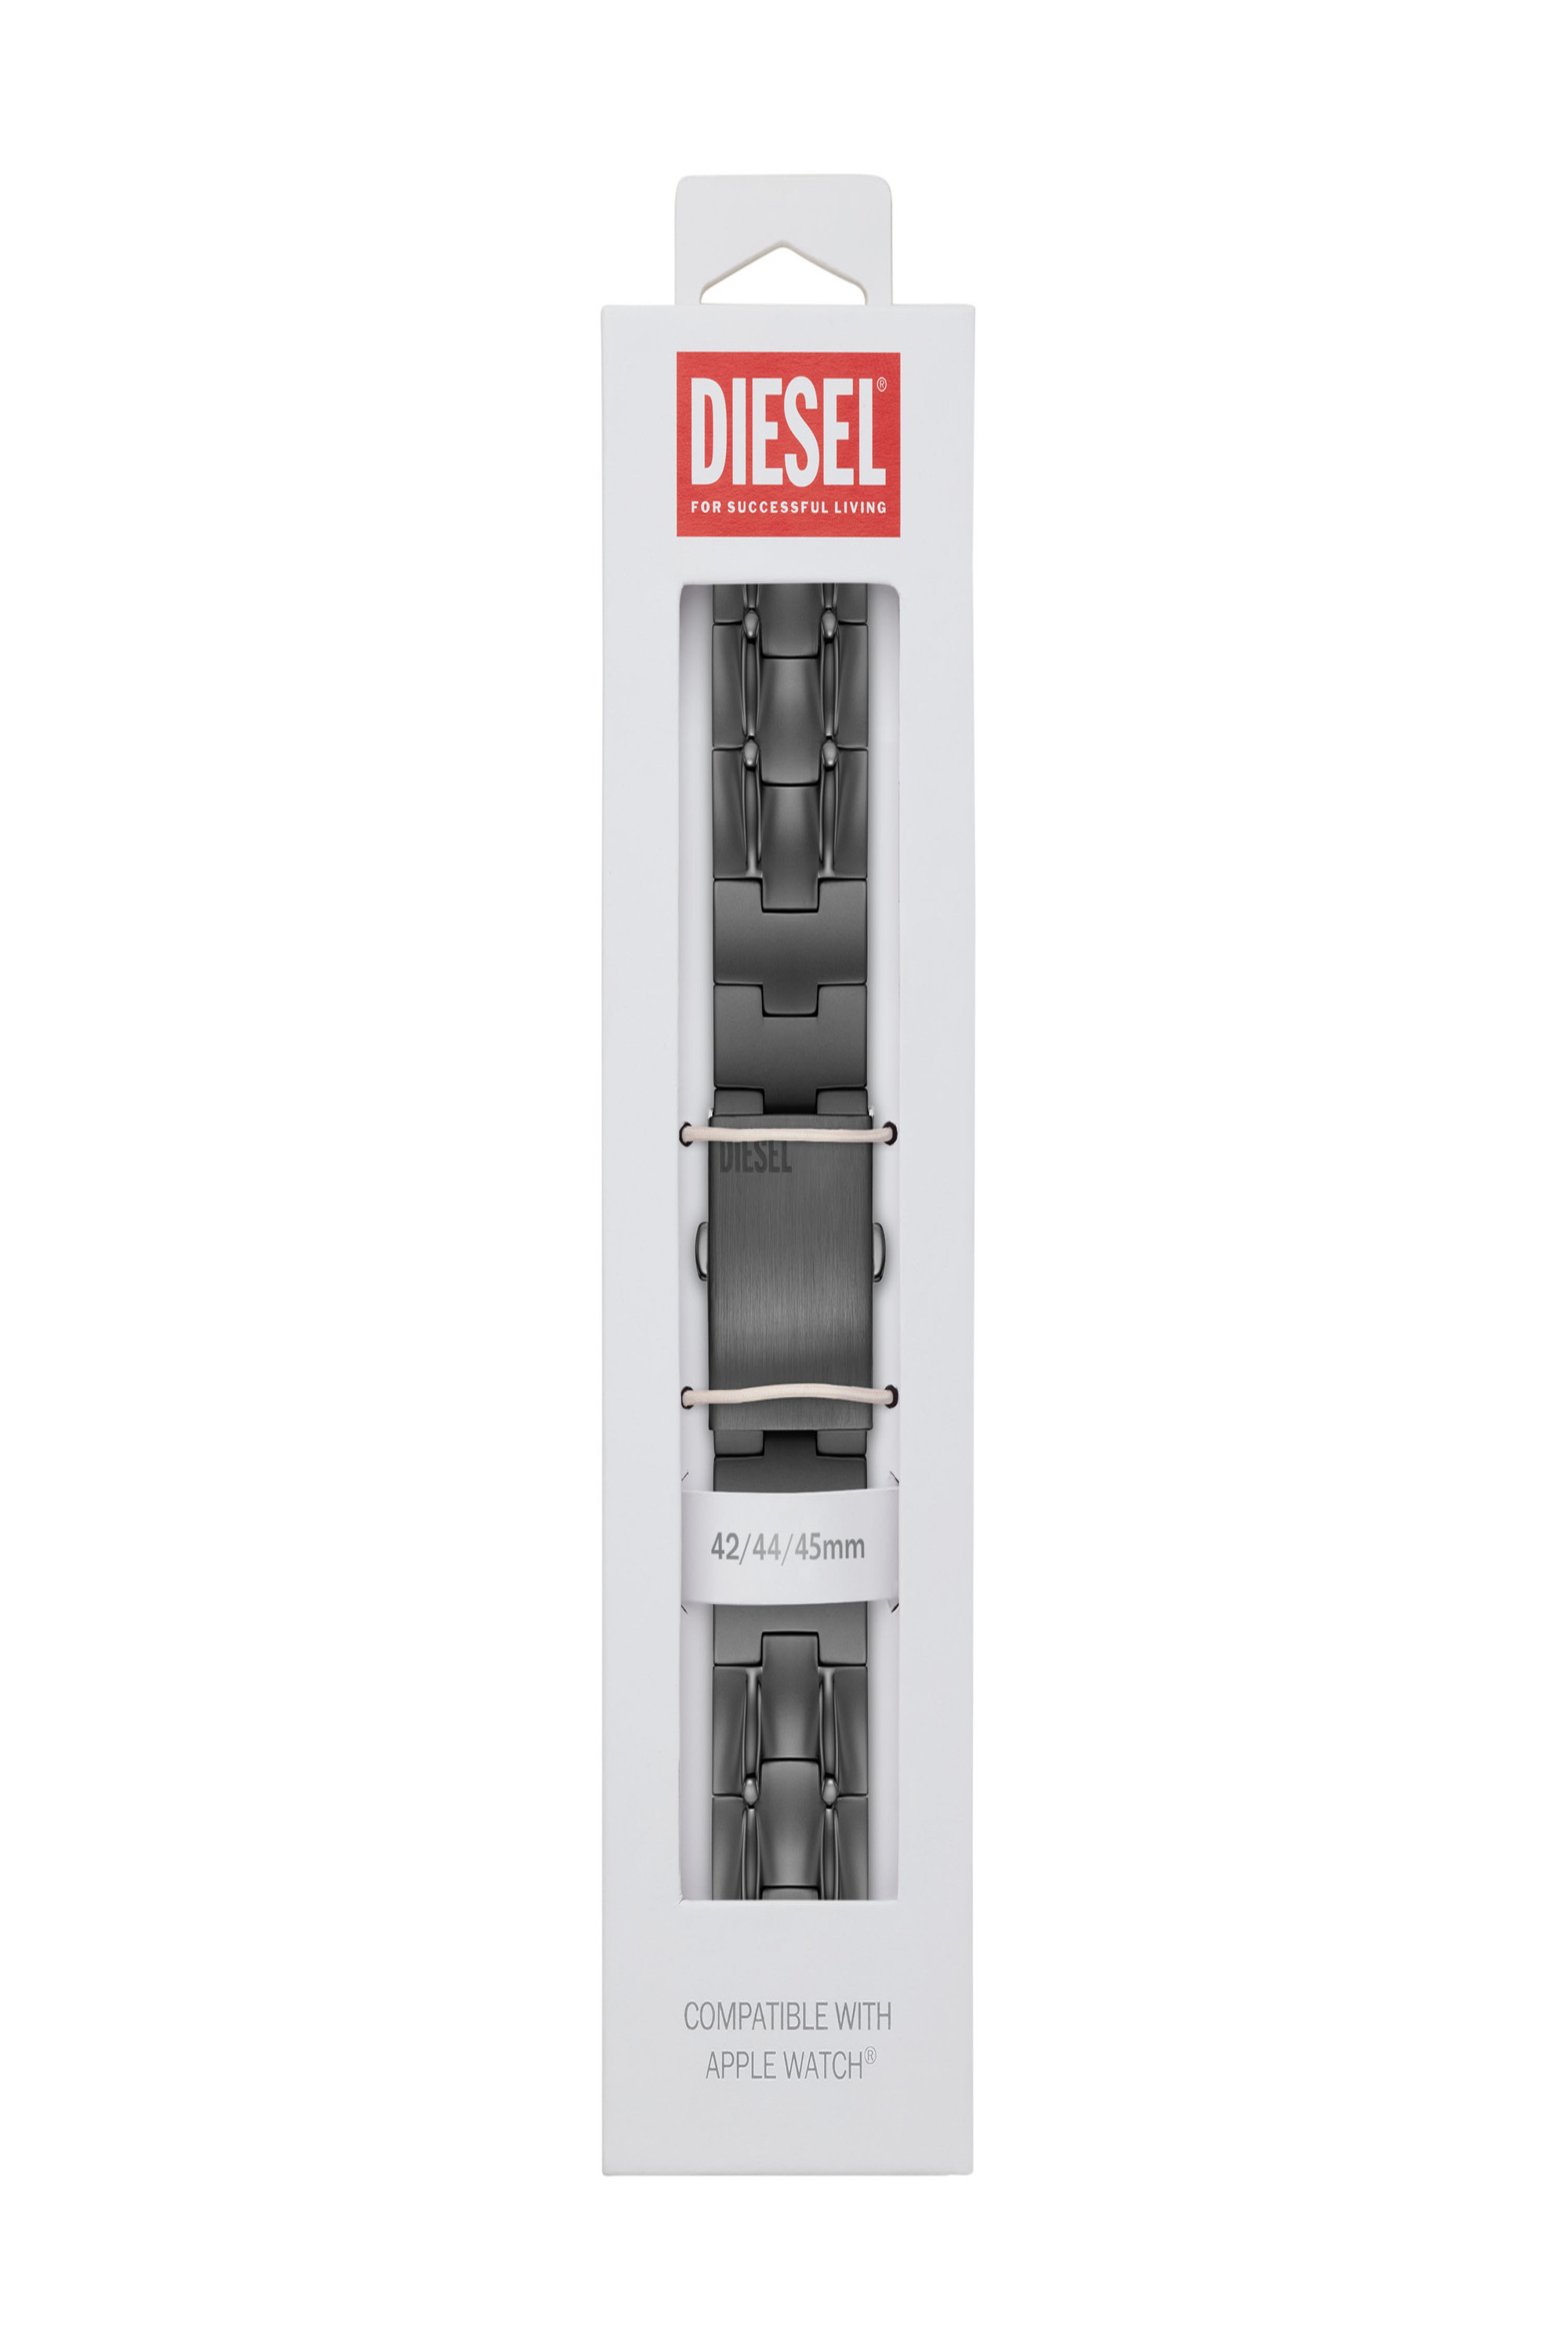 Diesel - DSS0015, Gris - Image 2